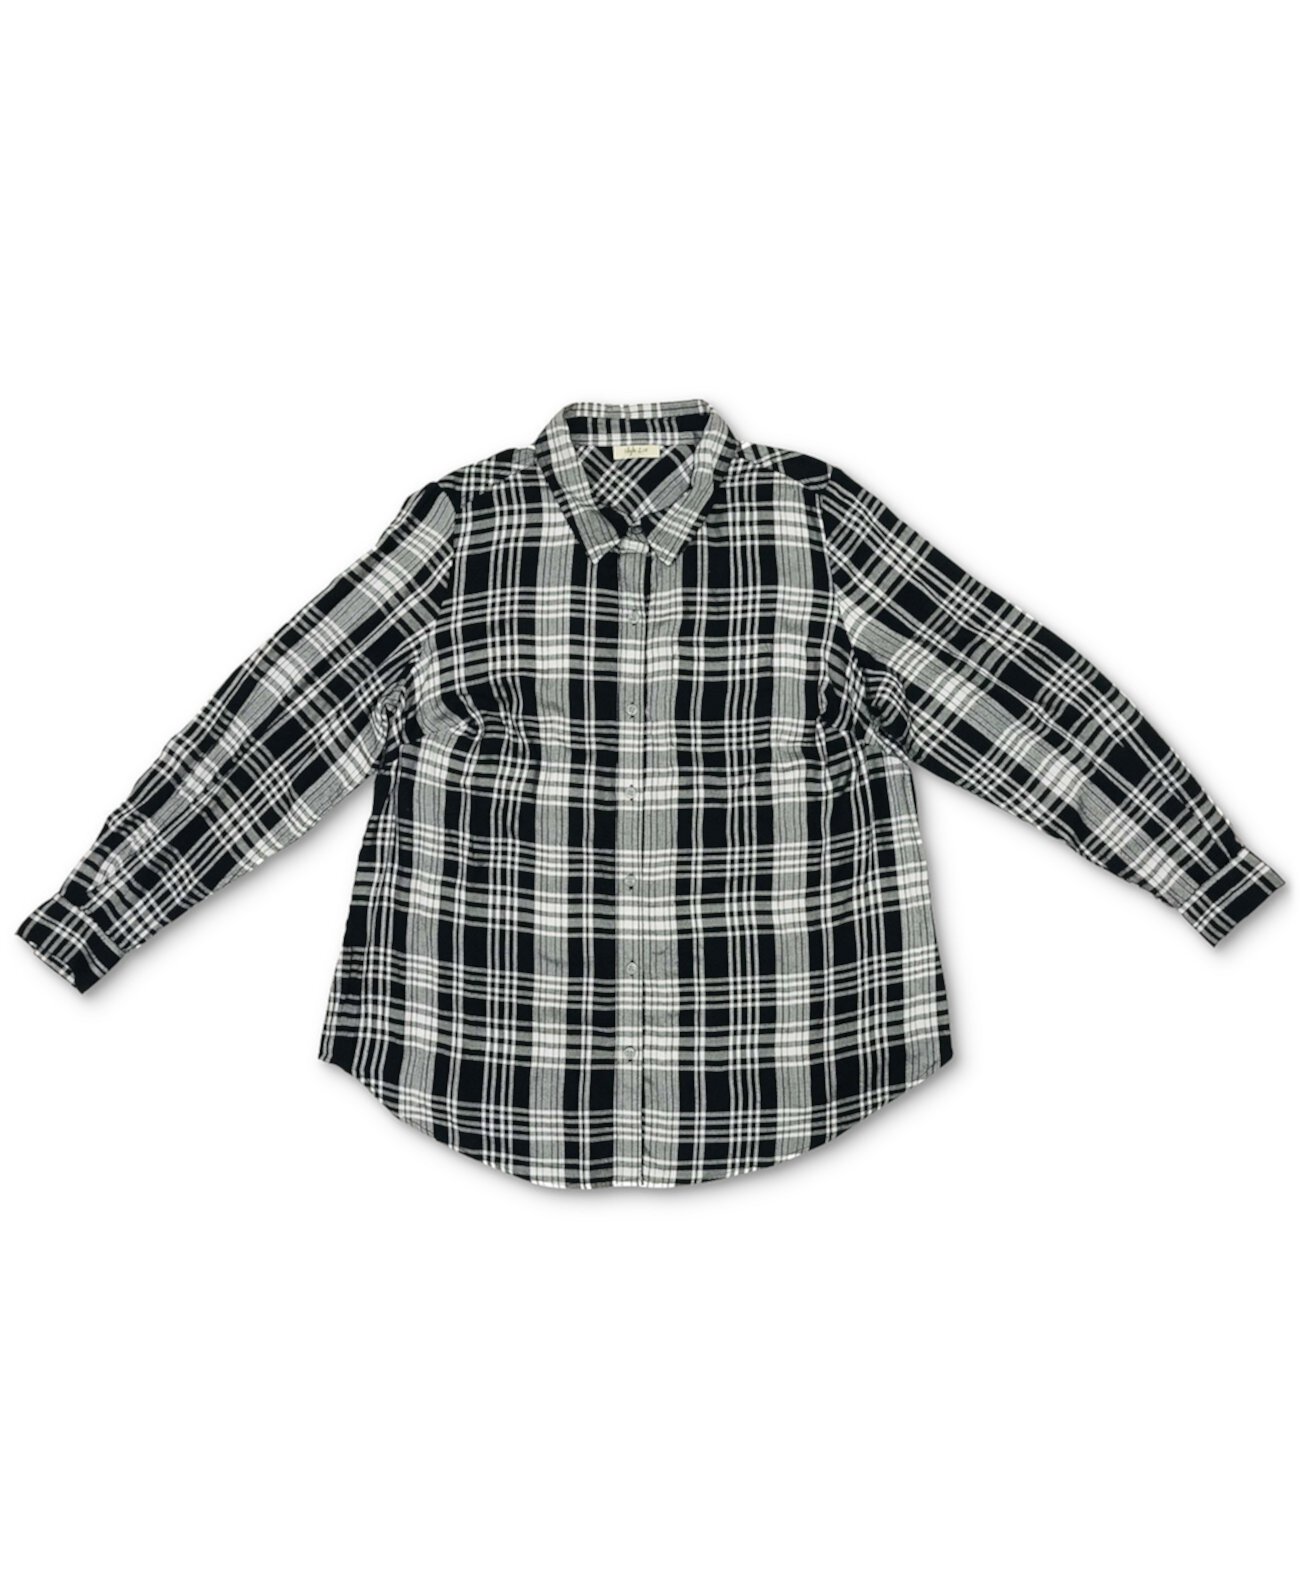 Маленькая рубашка с воротником из твила в клетку, созданная для Macy's Style & Co